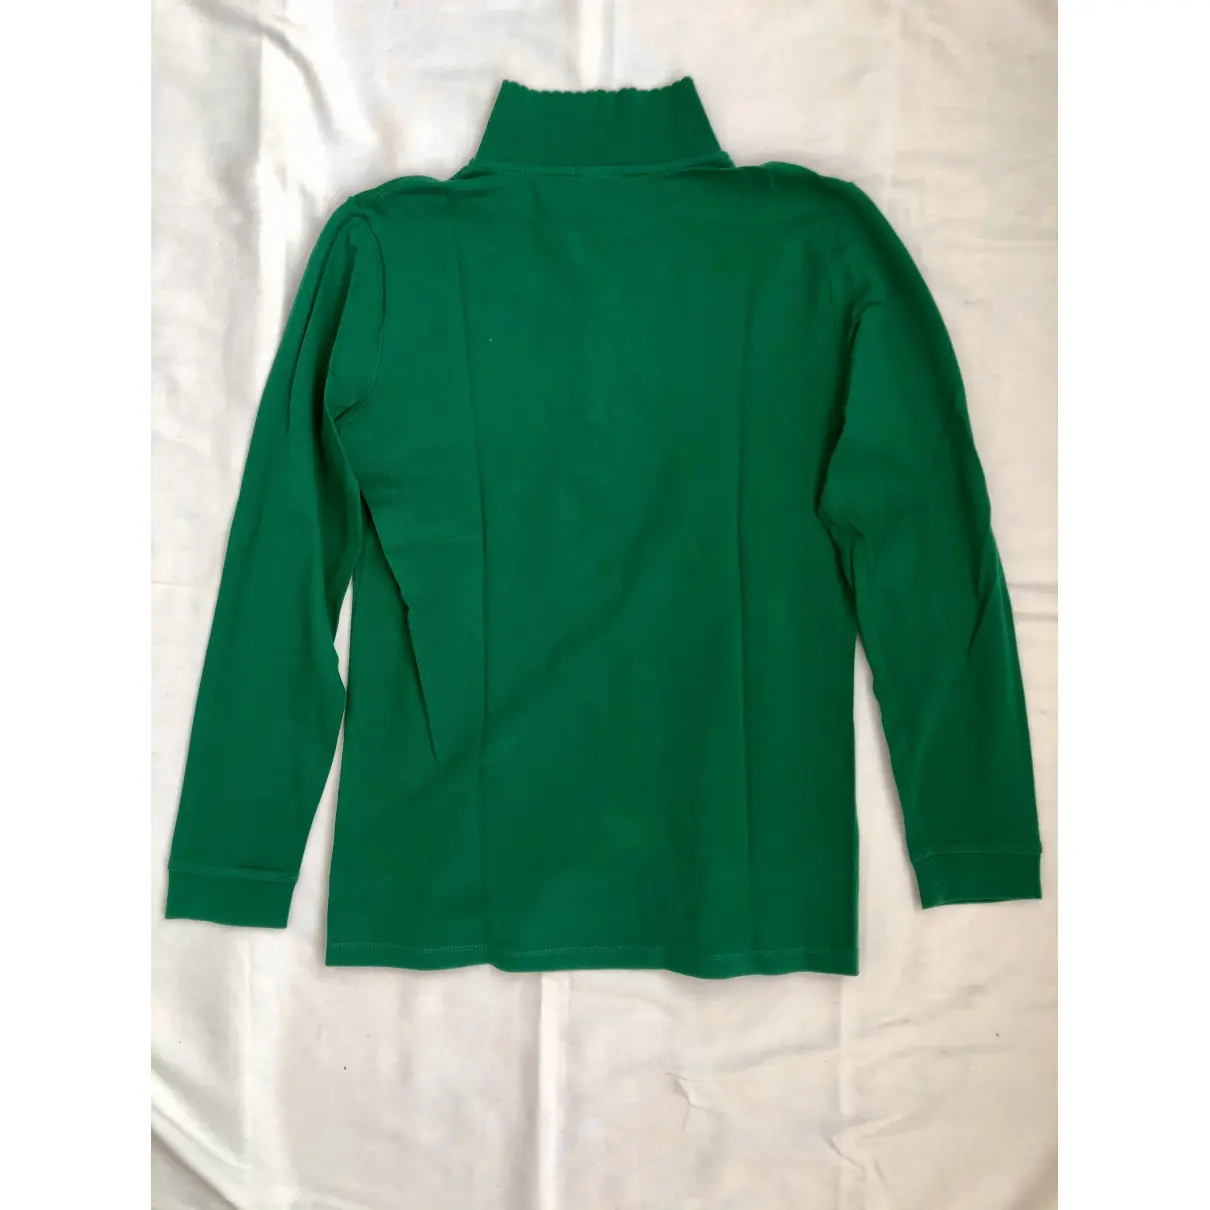 Buy Polo Ralph Lauren Green Cotton Top online